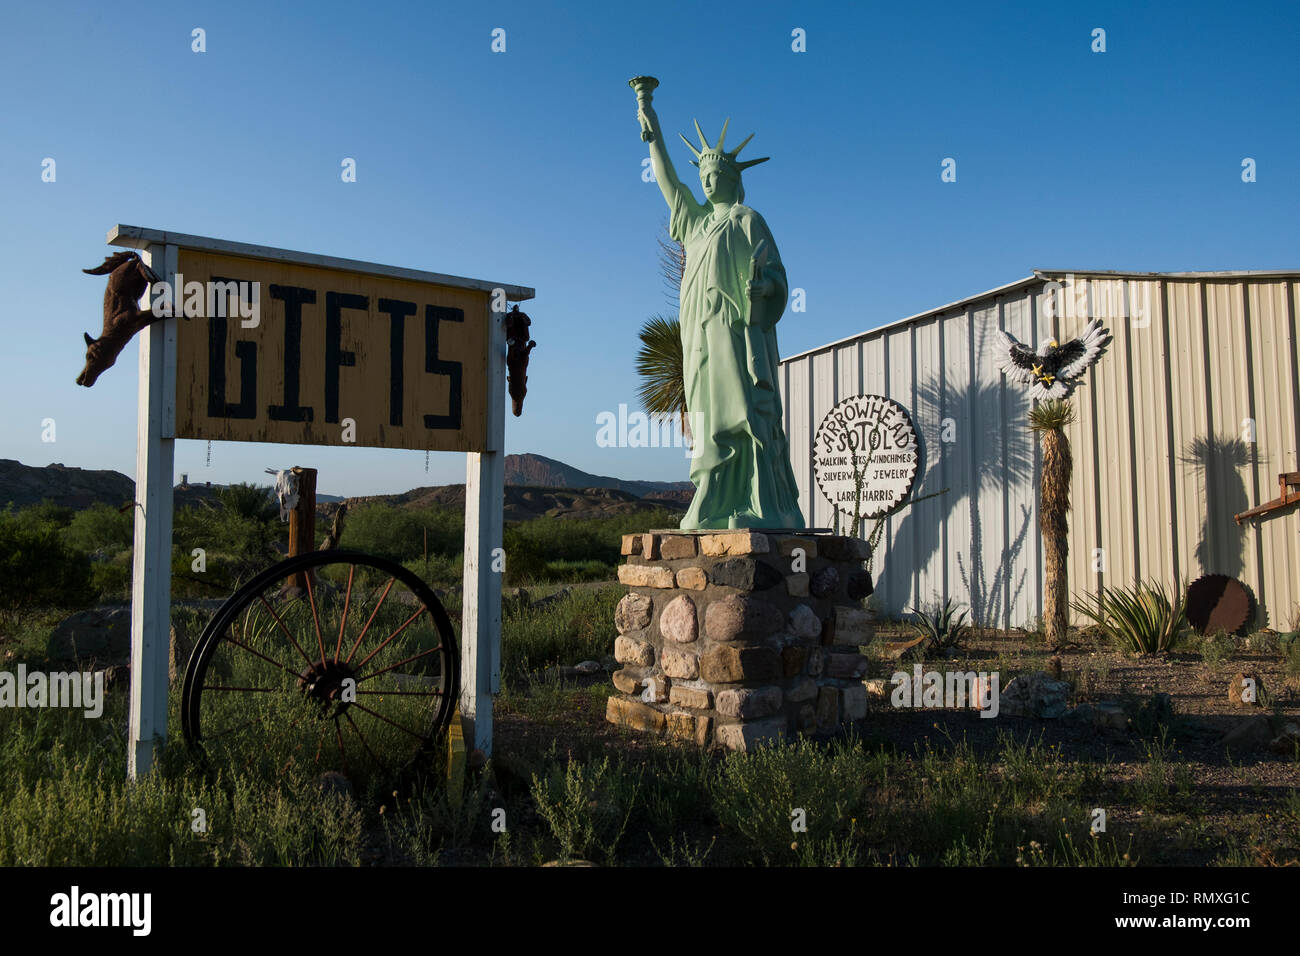 Un estilo kitsch réplica de la Estatua de la libertad en una tienda de regalos en el oeste de Texas. Foto de stock